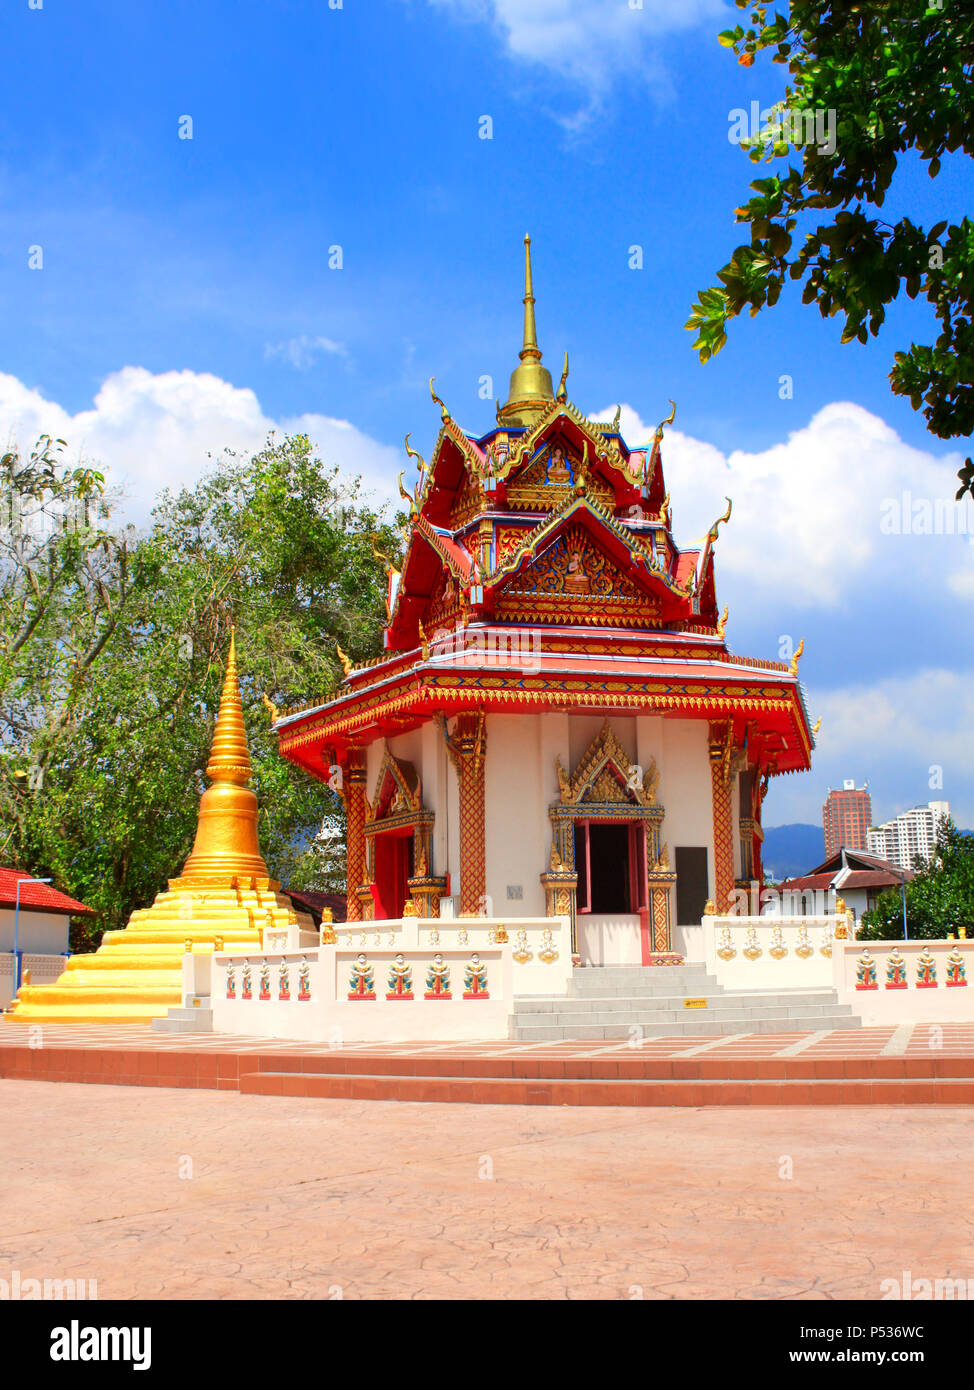 Dans le pavillon, Pulau Tikus (temple bouddhiste thaï Wat Chayamangkalaram), célèbre attraction touristique à Georgetown, l'île de Penang, Malaisie Banque D'Images